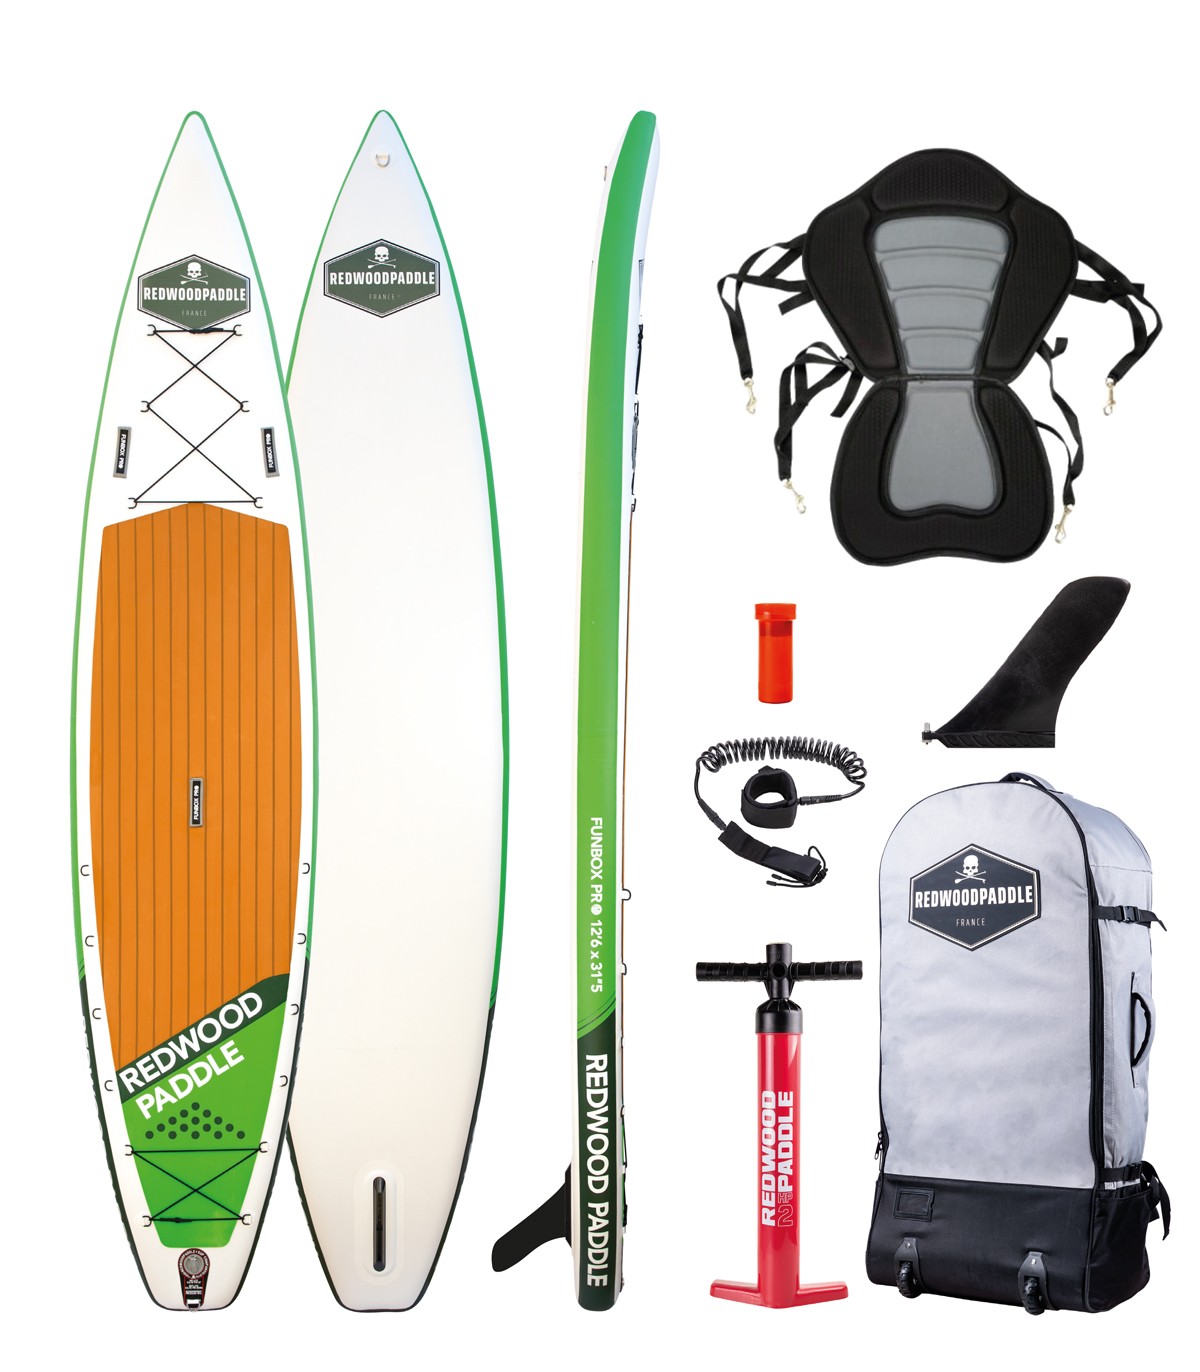 Bolsa estanca para kayaks y tablas de paddle surf de 5 a 30 Litros.